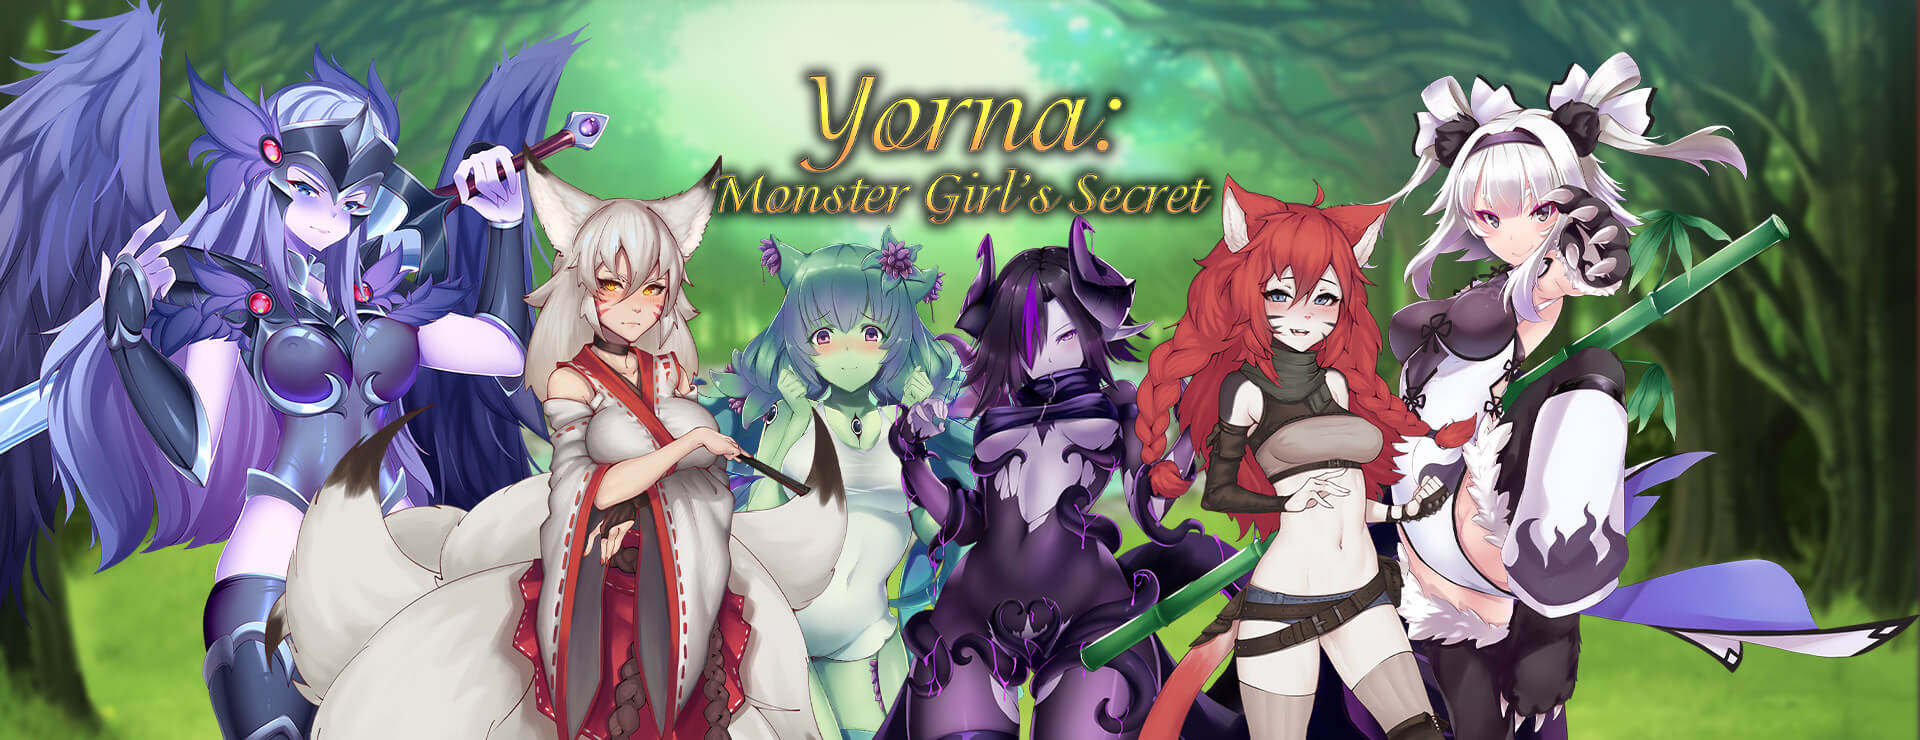 Yorna - Monster Girl's Secret - RPG Game